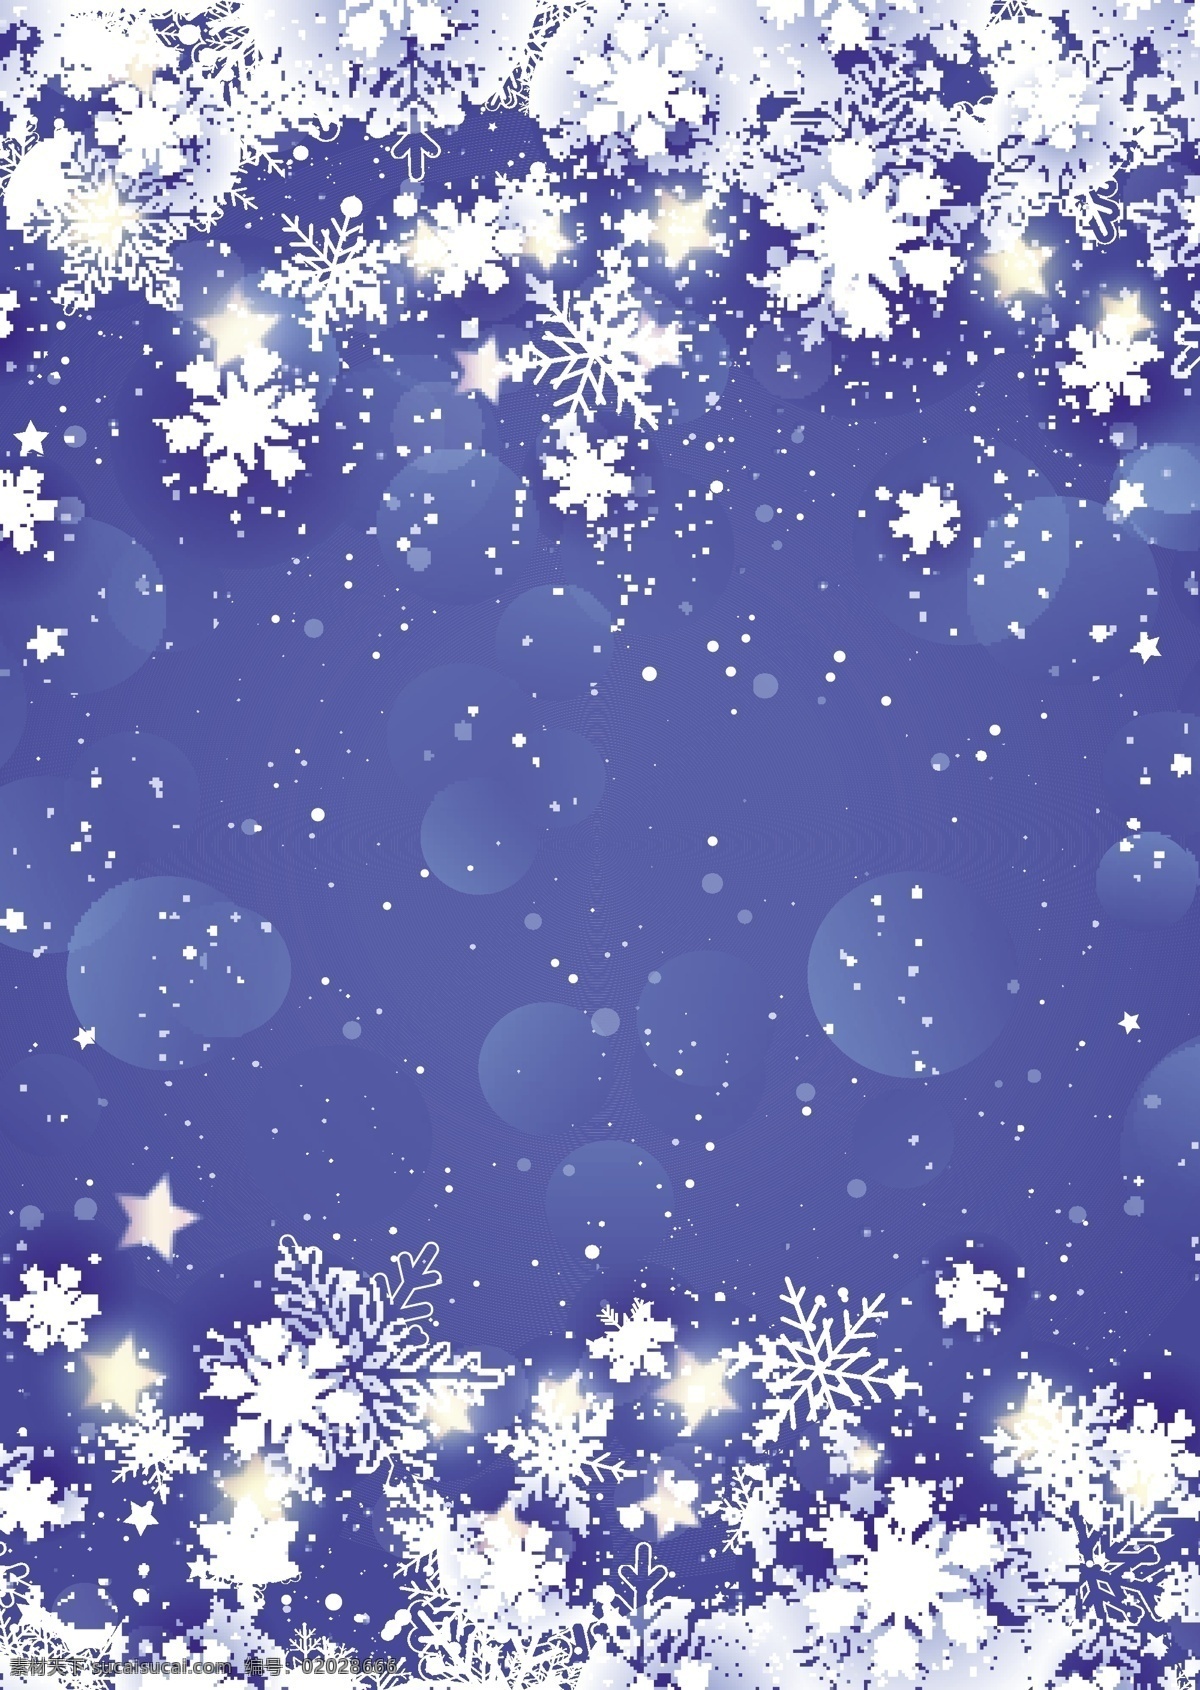 圣诞 雪花 星星 蓝色 背景 圣诞节 节日 过节 庆祝 狂欢 西方节日 假期 扁平 矢量 卡通